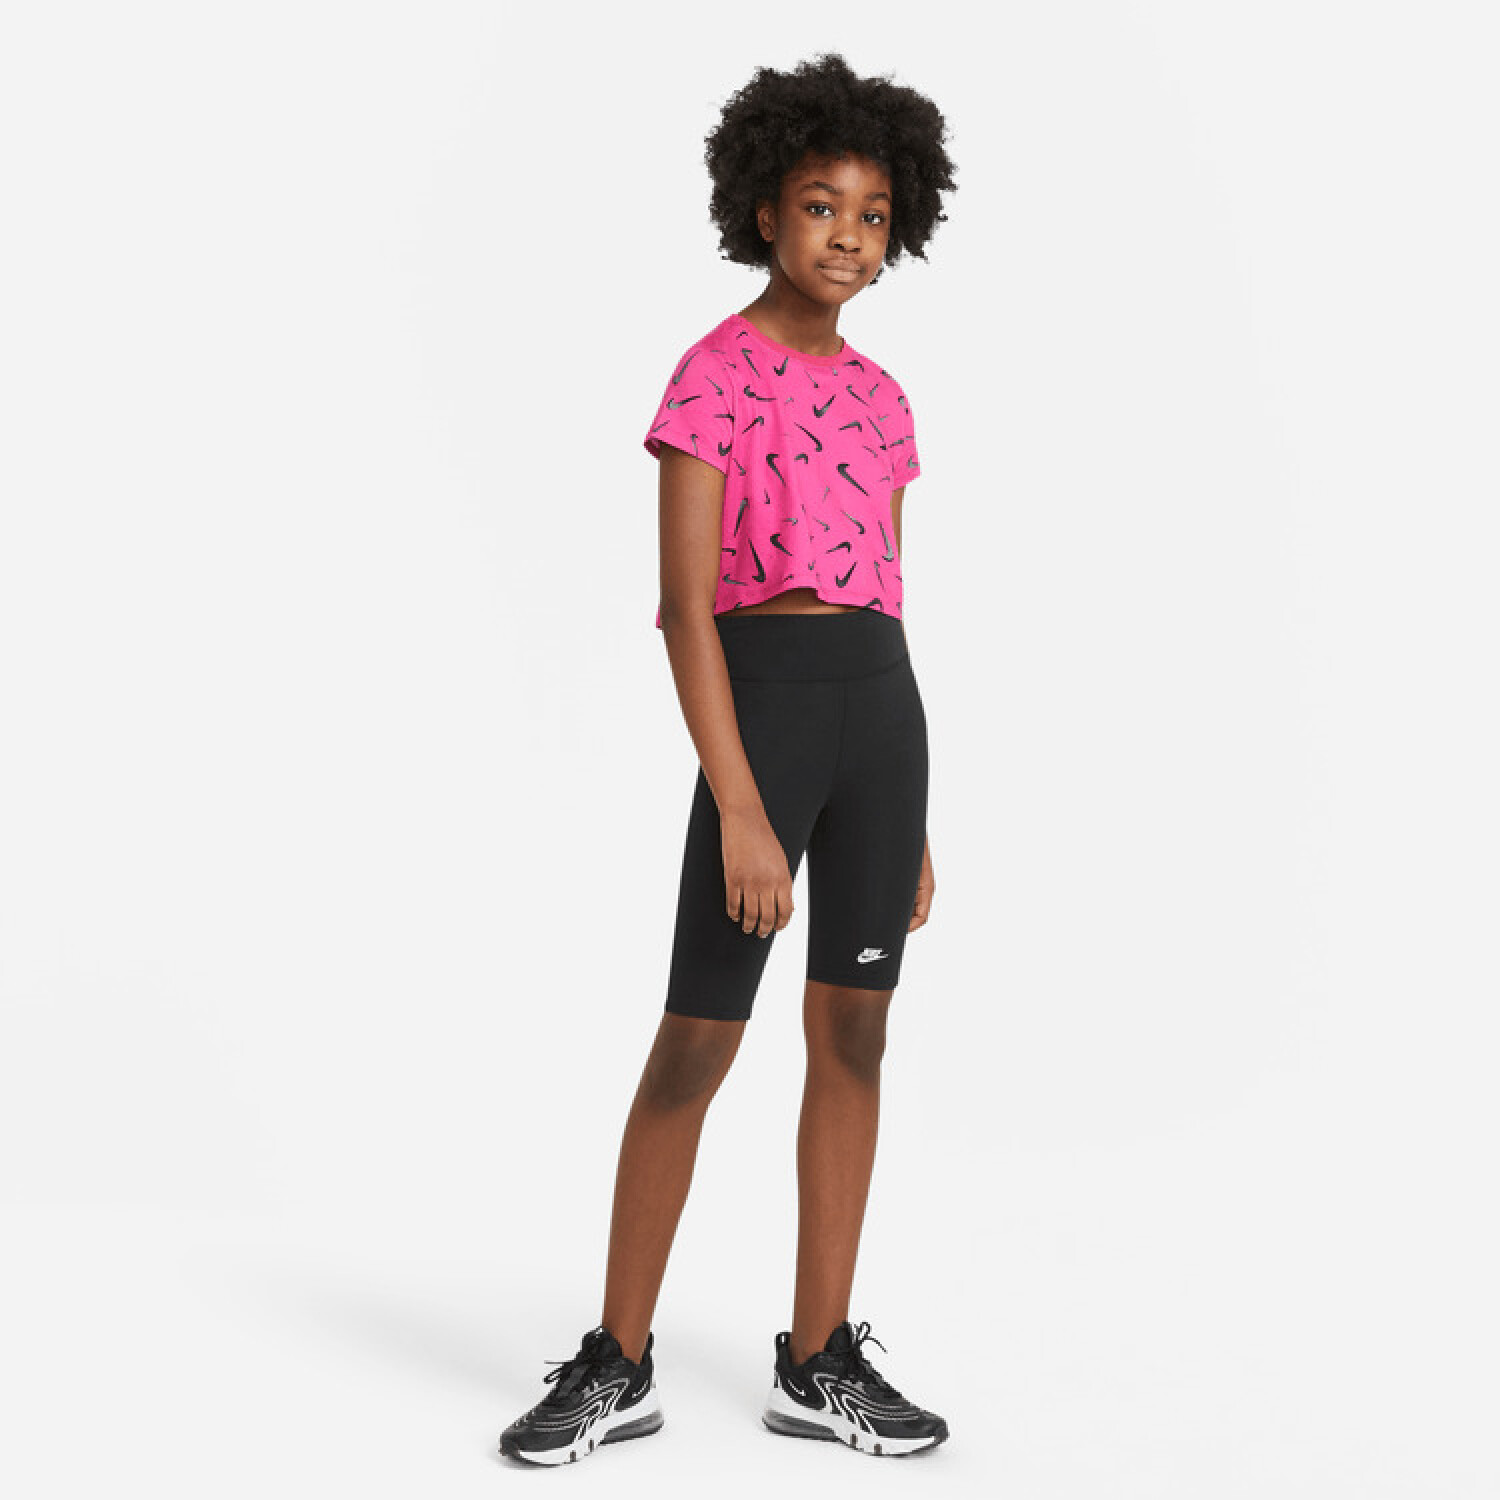 Calza Corta Running Mujer Nike Bike Shorts Negro